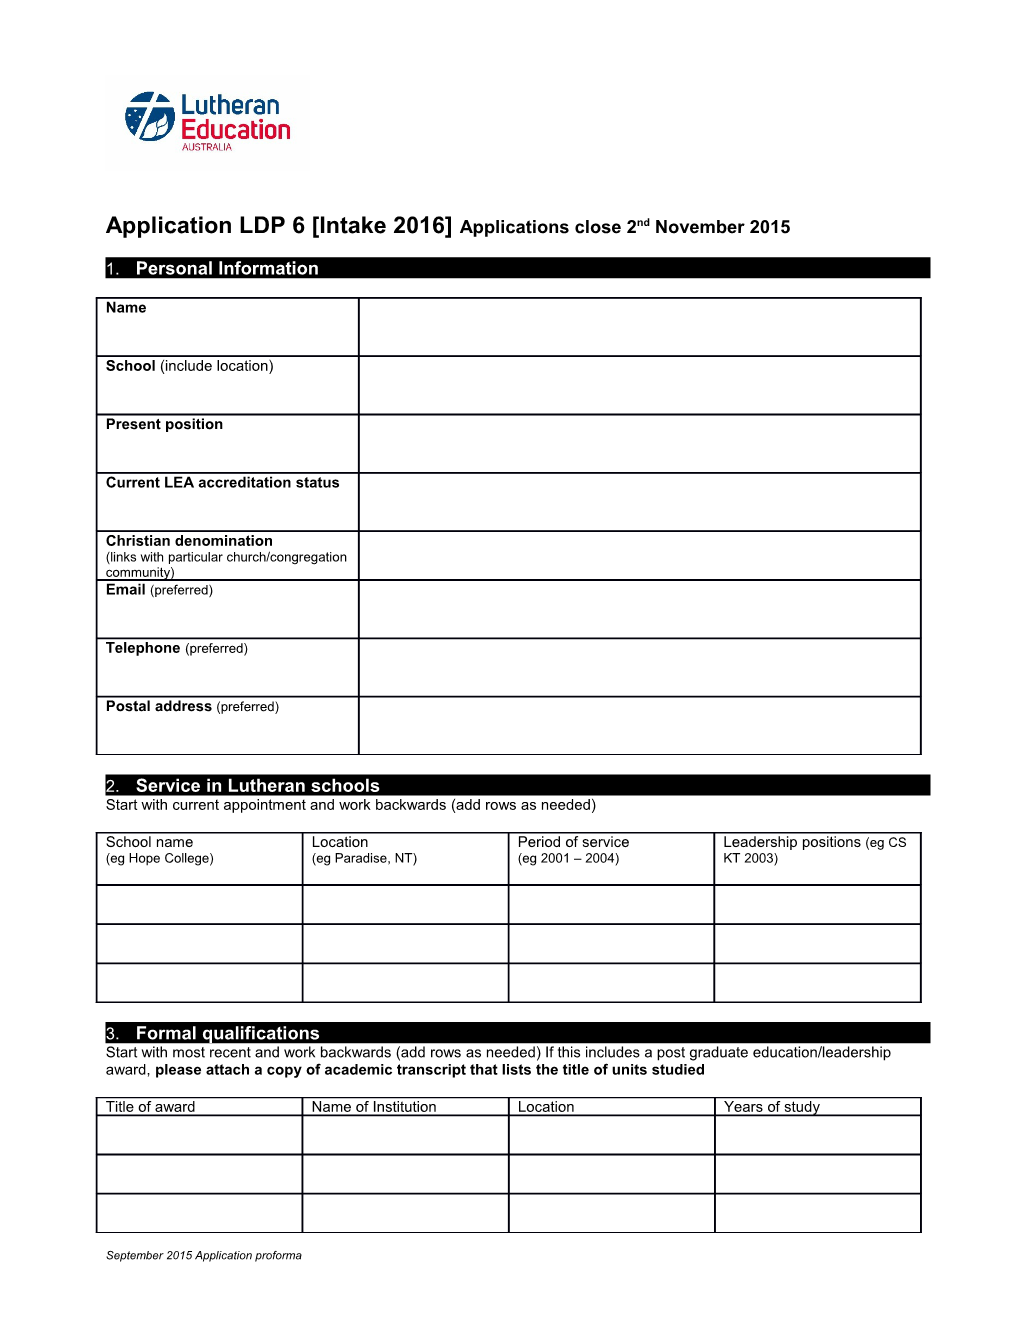 Application LDP 6 Intake 2016 Applications Close 2Nd November 2015